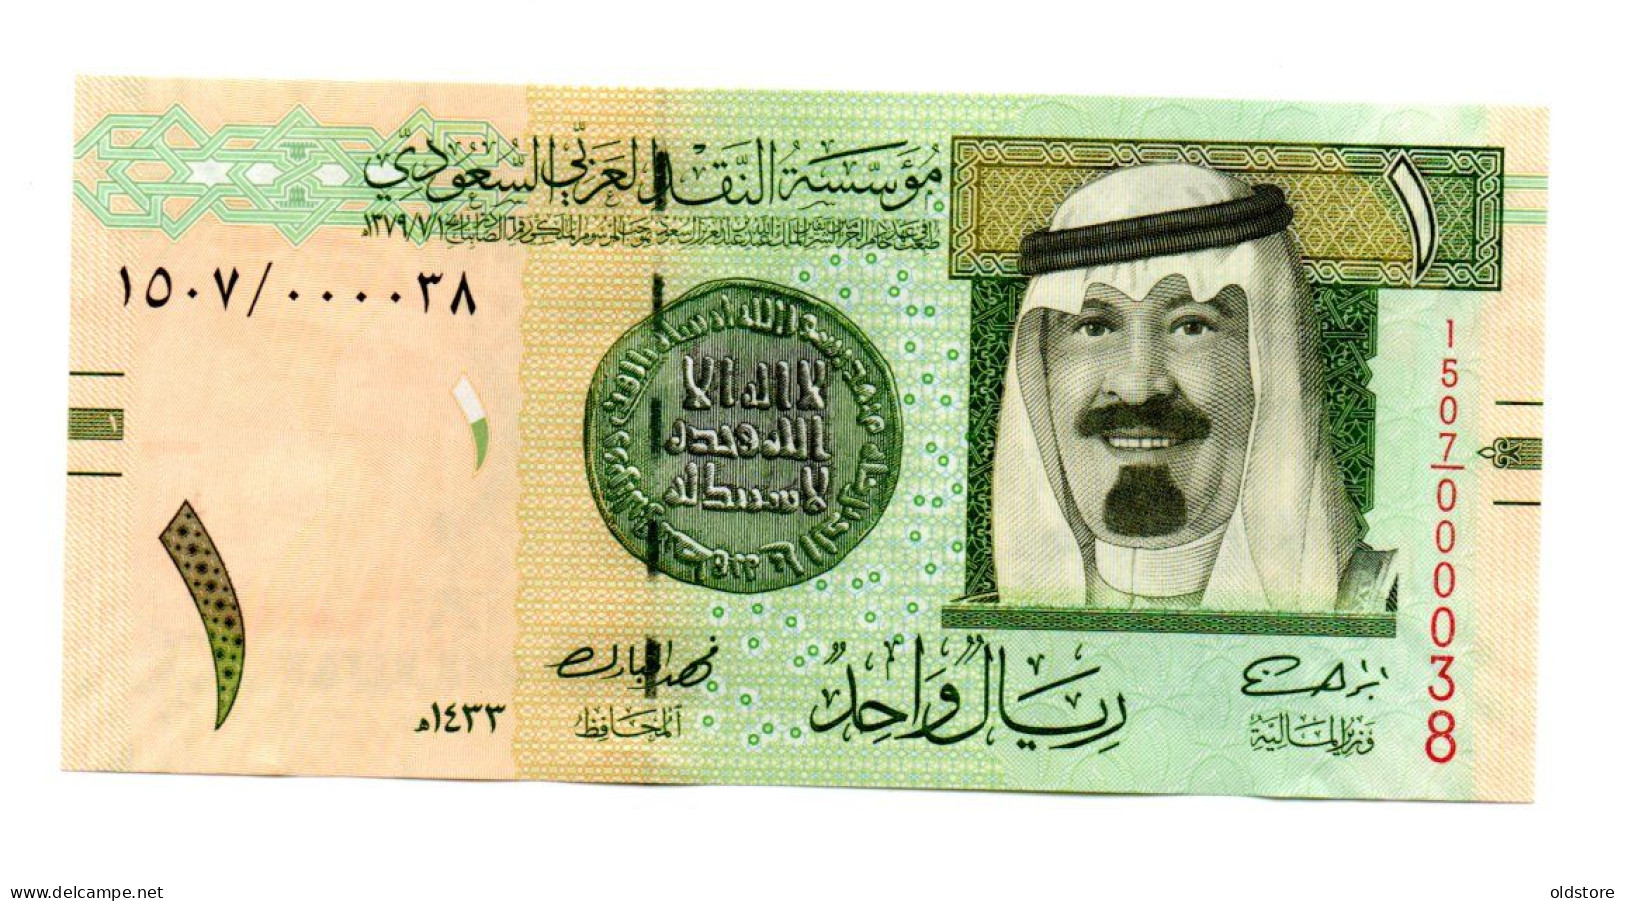 Saudi Arabia Banknotes - One Riyal 2012 Low Serial Number ( 000038 ) - UNC - Saudi Arabia